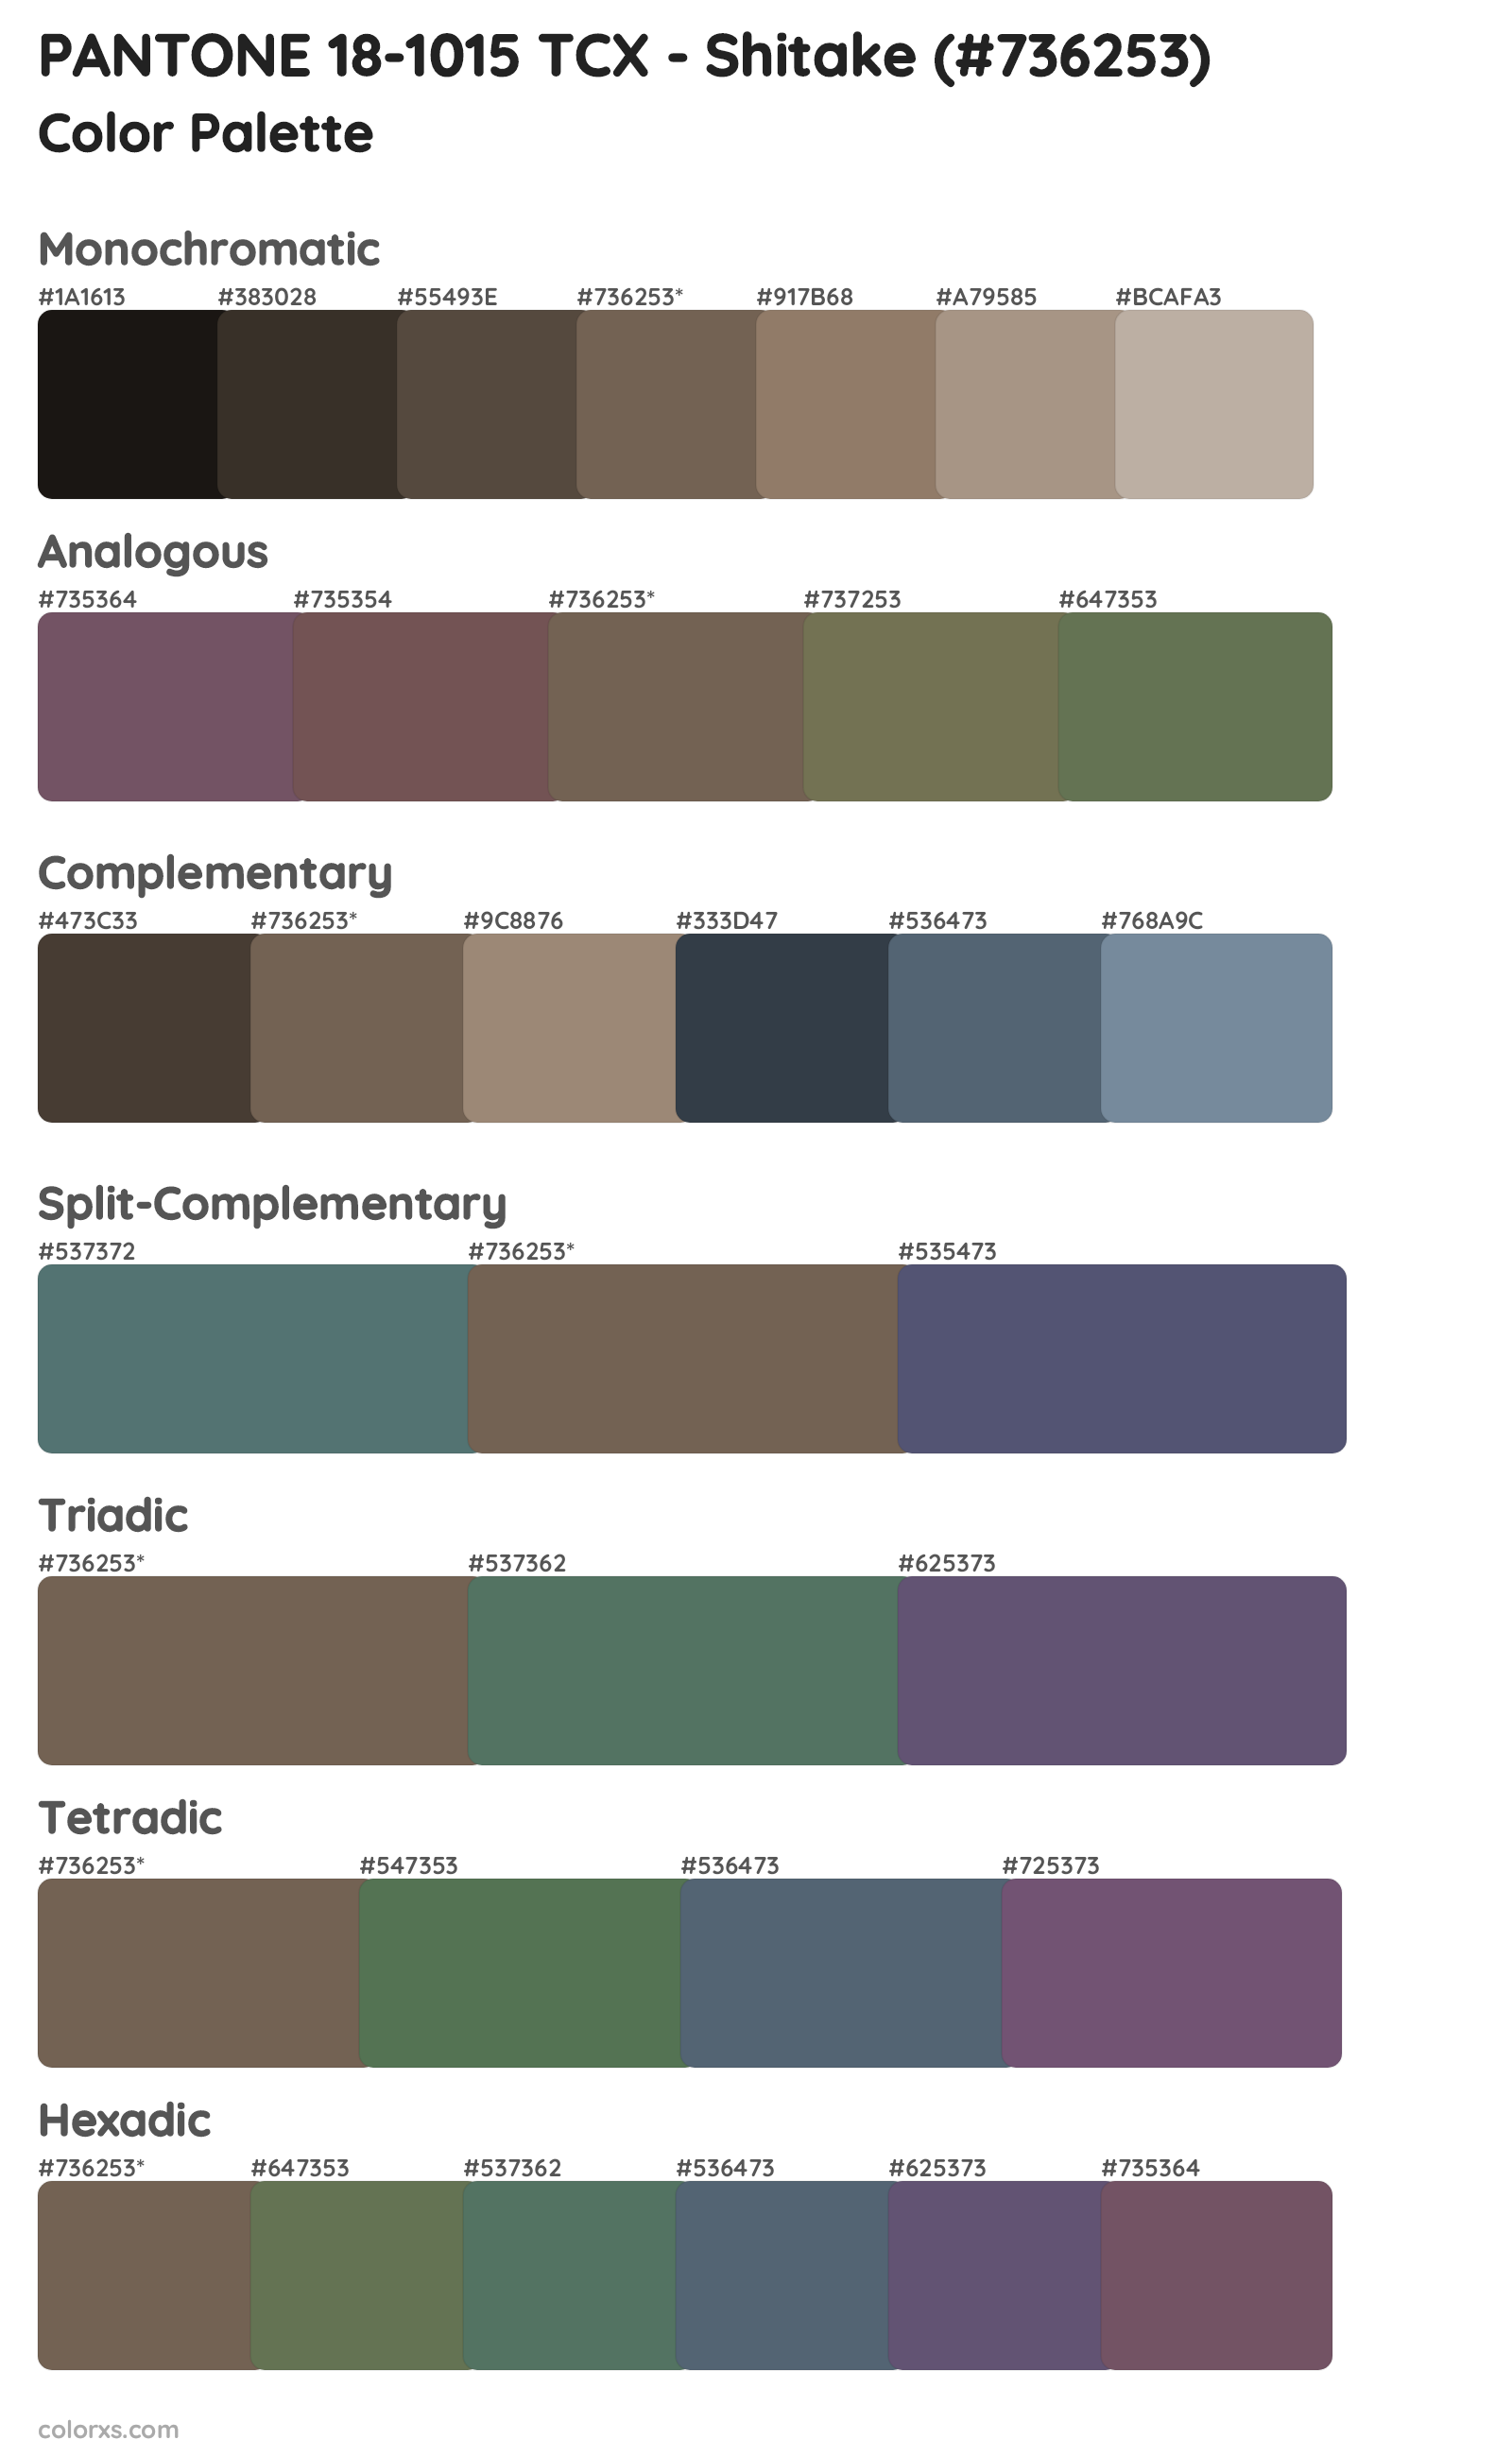 PANTONE 18-1015 TCX - Shitake Color Scheme Palettes